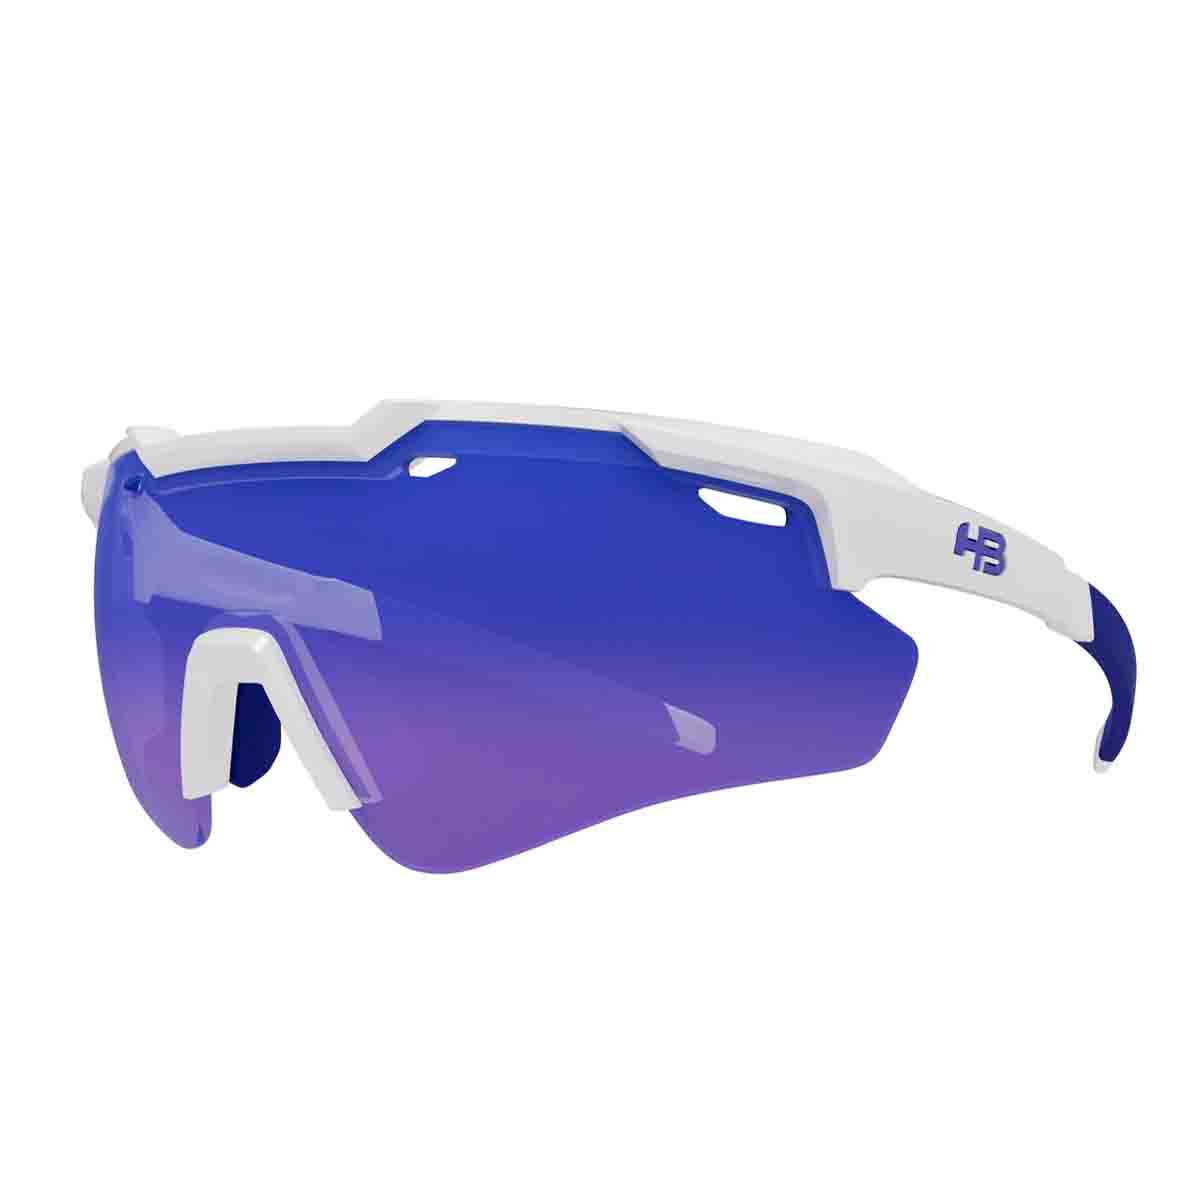 Oculos Para Ciclismo HB Shield Evo 2.0 Branco Pearled White Lente Azul Chrome Espelhada